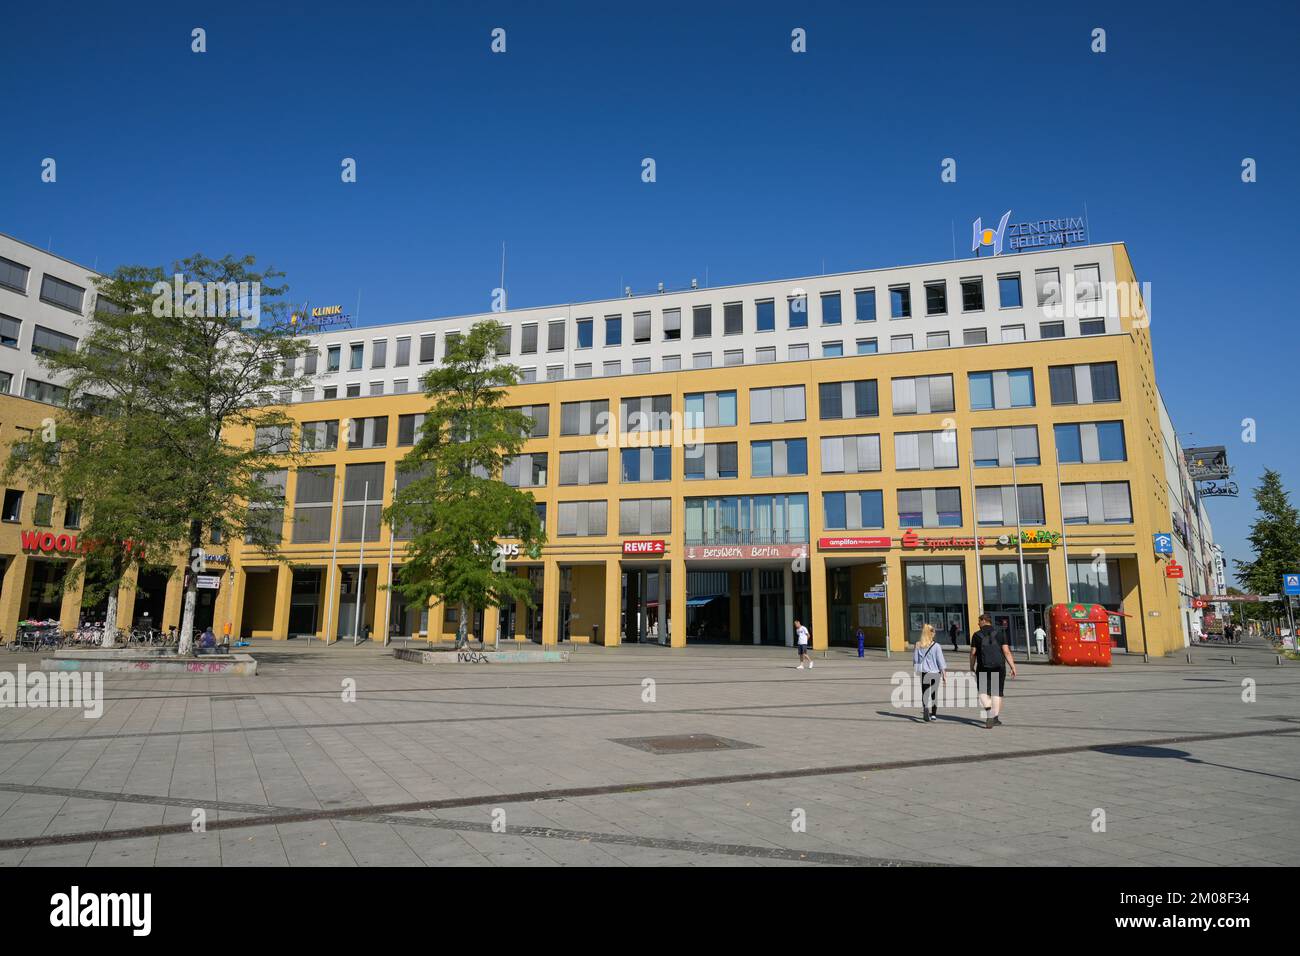 Zentrum Helle Mitte, Alice-Salomon-Platz, Hellersdorf, Berlin, Deutschland  Stockfotografie - Alamy